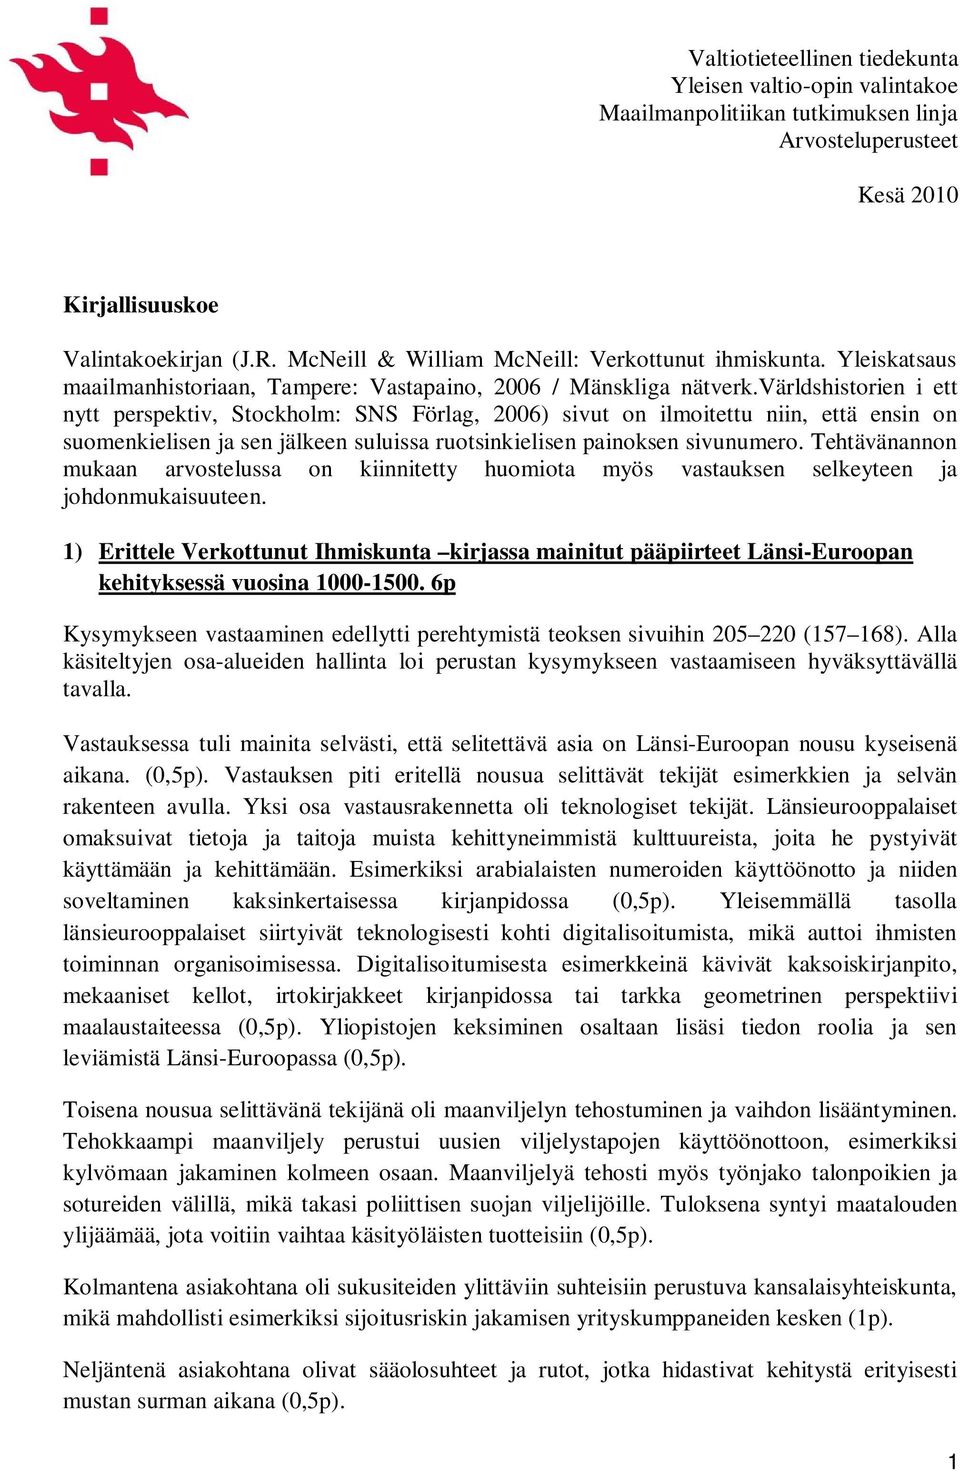 världshistorien i ett nytt perspektiv, Stockholm: SNS Förlag, 2006) sivut on ilmoitettu niin, että ensin on suomenkielisen ja sen jälkeen suluissa ruotsinkielisen painoksen sivunumero.